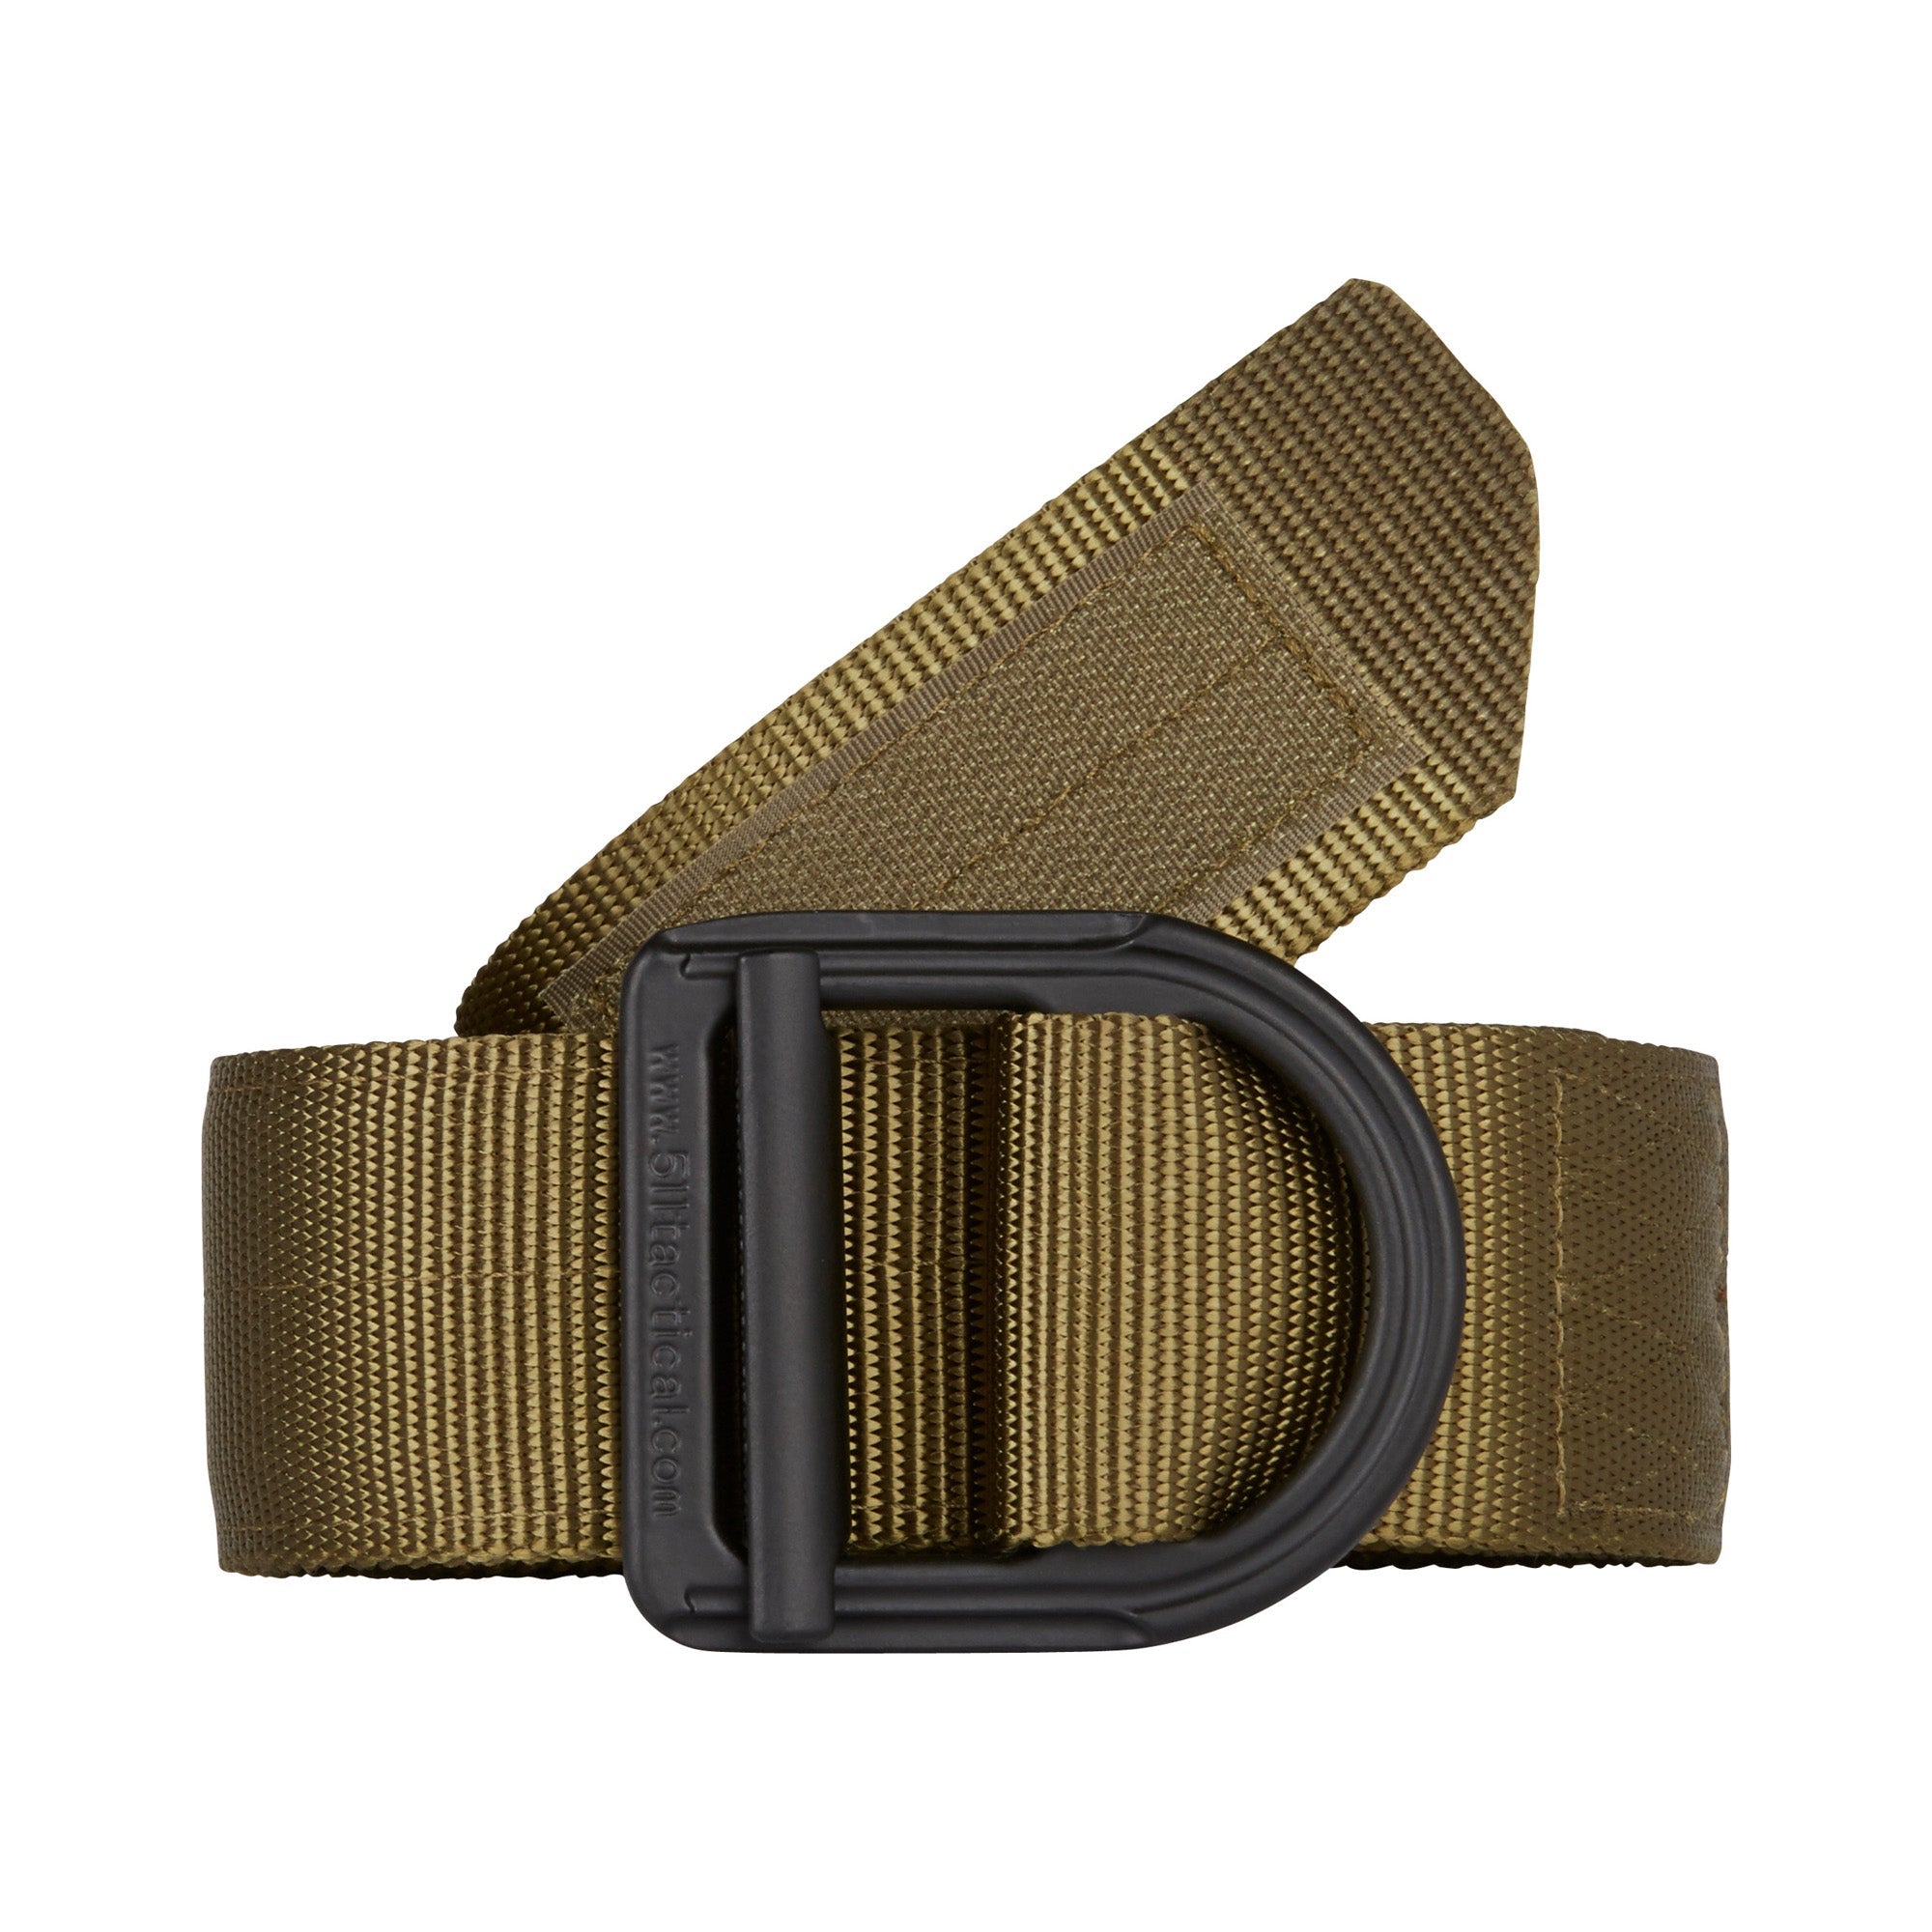 5.11 Tactical 1.75" Operator Belt Accessories 5.11 Tactical TDU Green Small Tactical Gear Supplier Tactical Distributors Australia